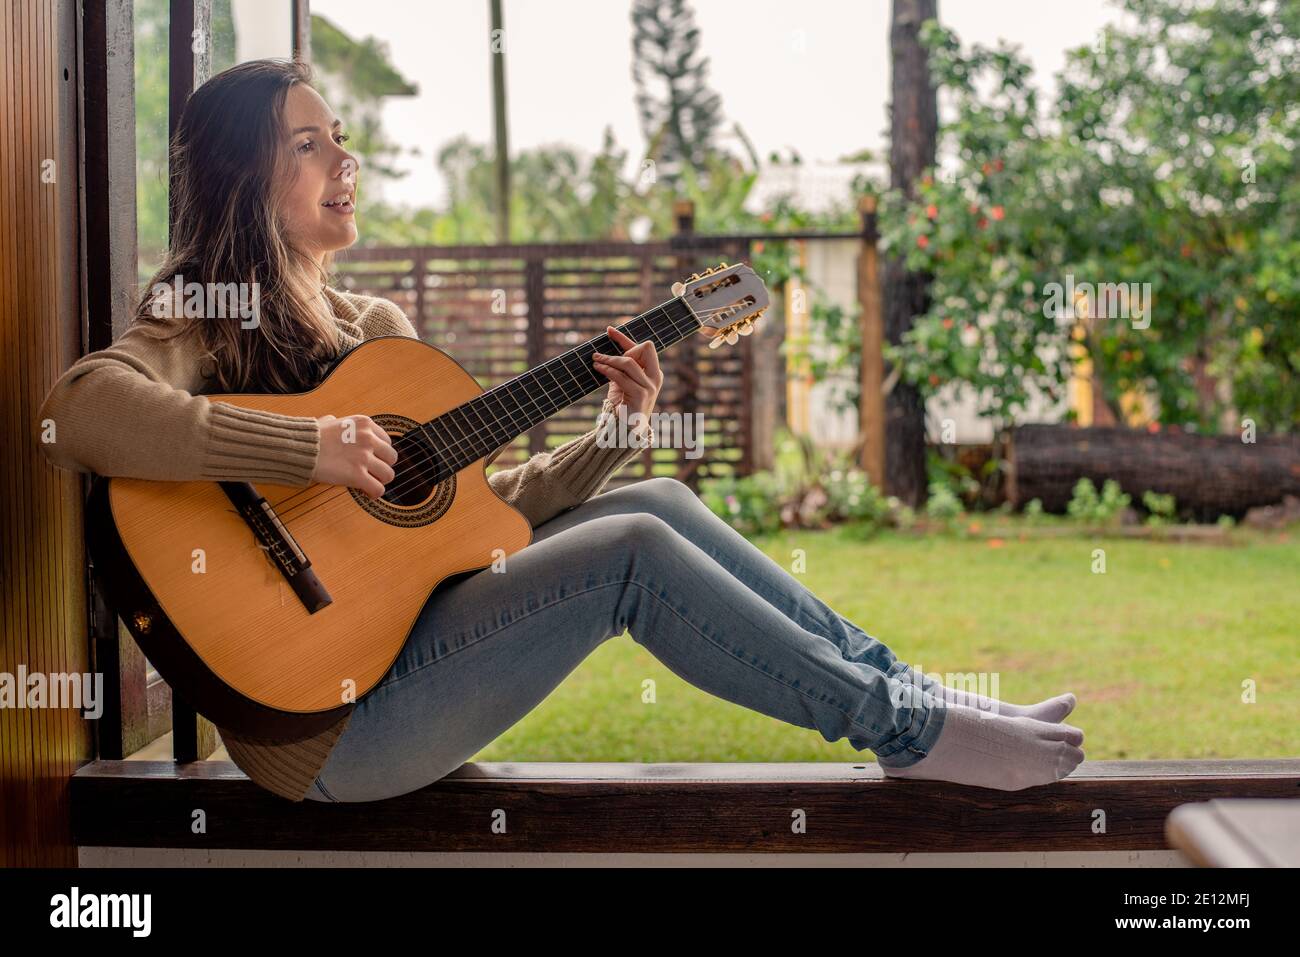 Femme jouant de la guitare à la fenêtre Photo Stock Alamy